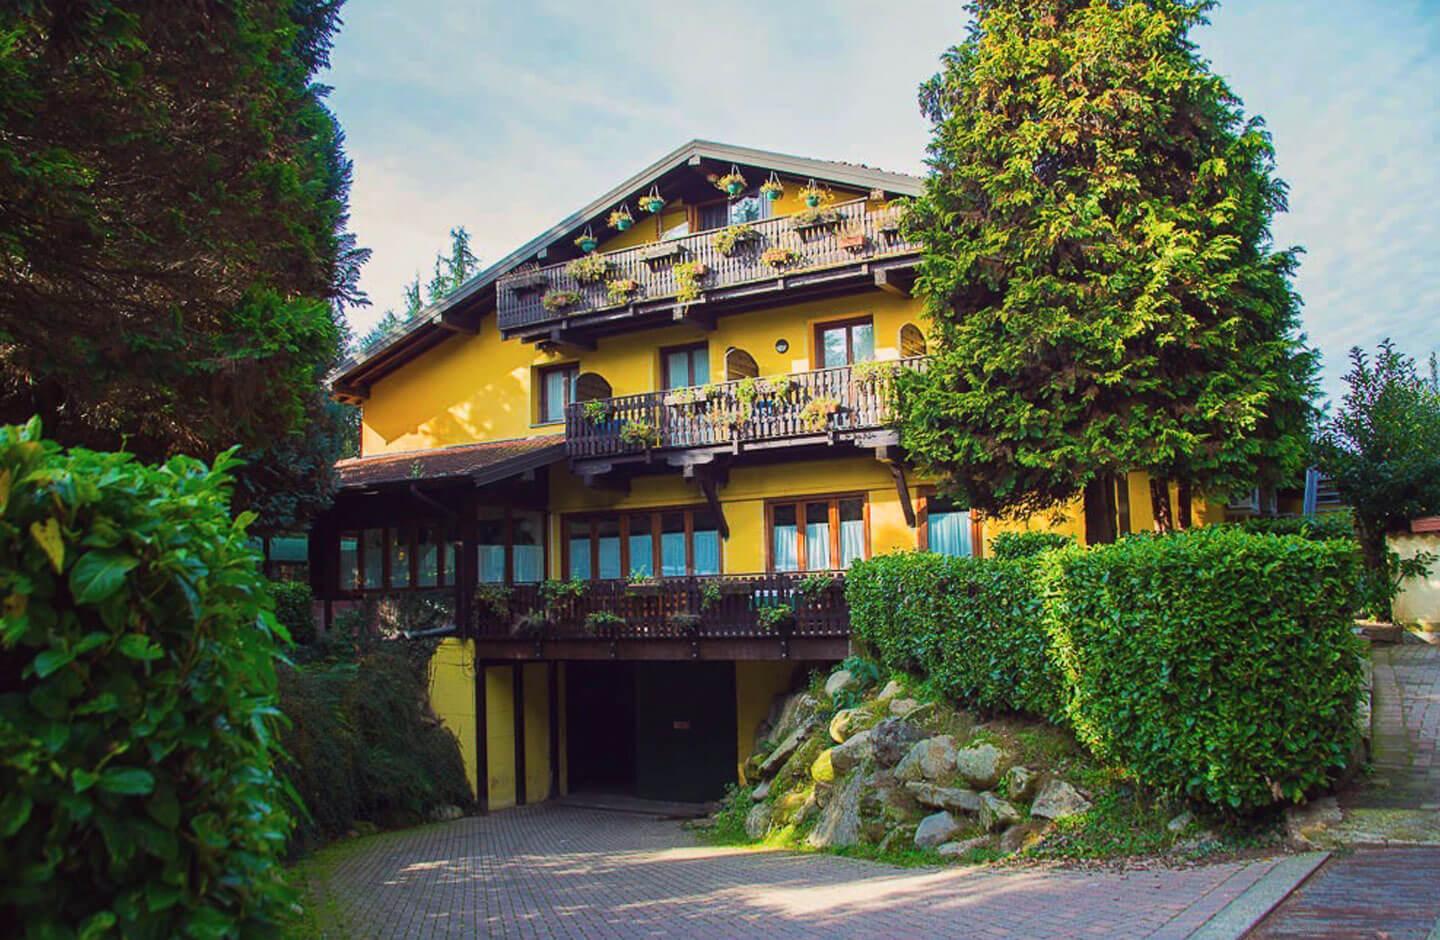 Hotel Ristorante La Perla